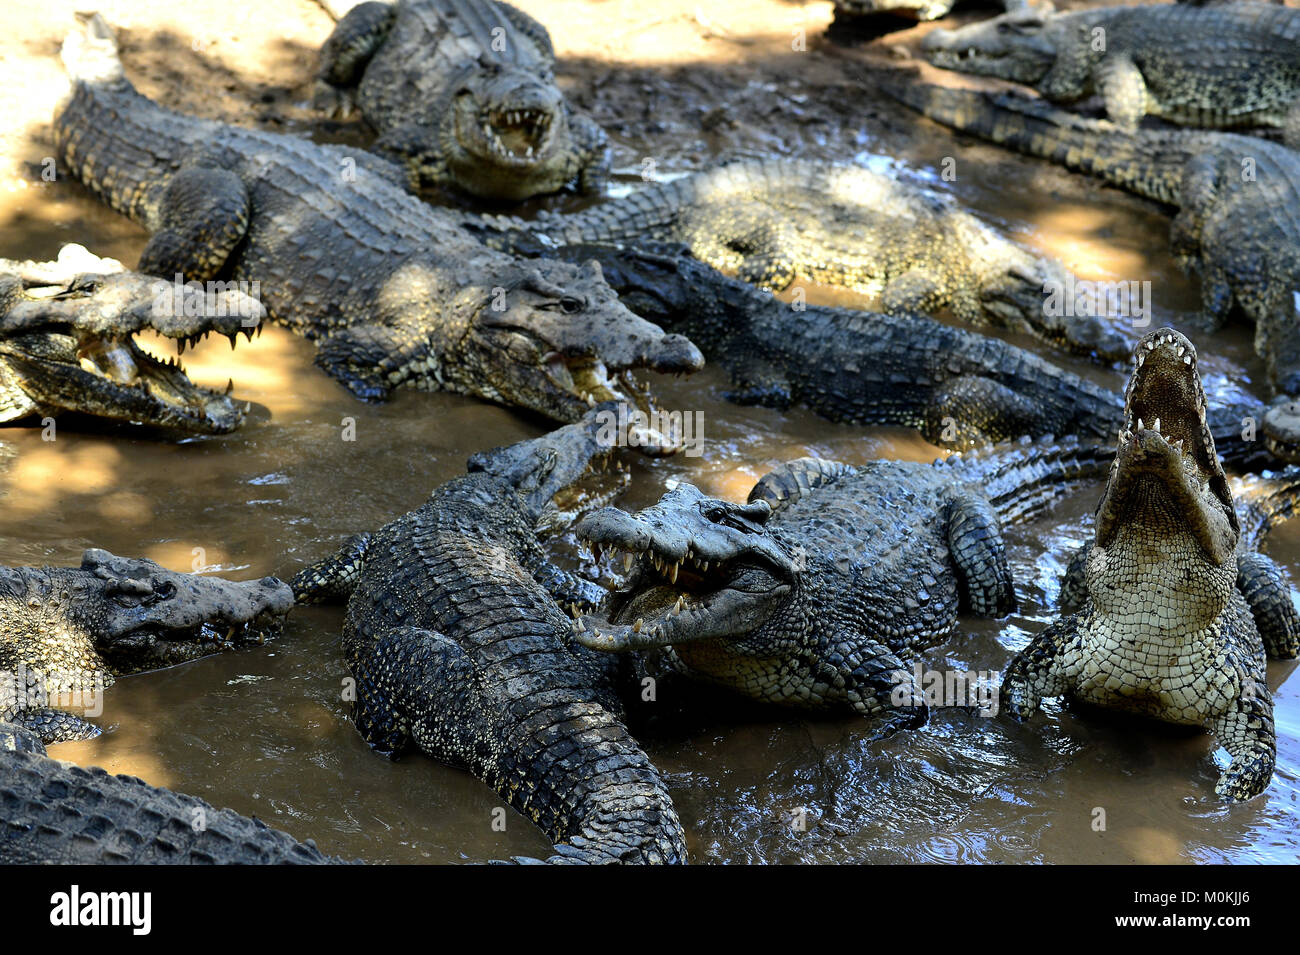 Gruppo di coccodrilli cubano (Crocodylus rhombifer). Immagine scattata in un parco naturale dell'isola di Cuba Foto Stock